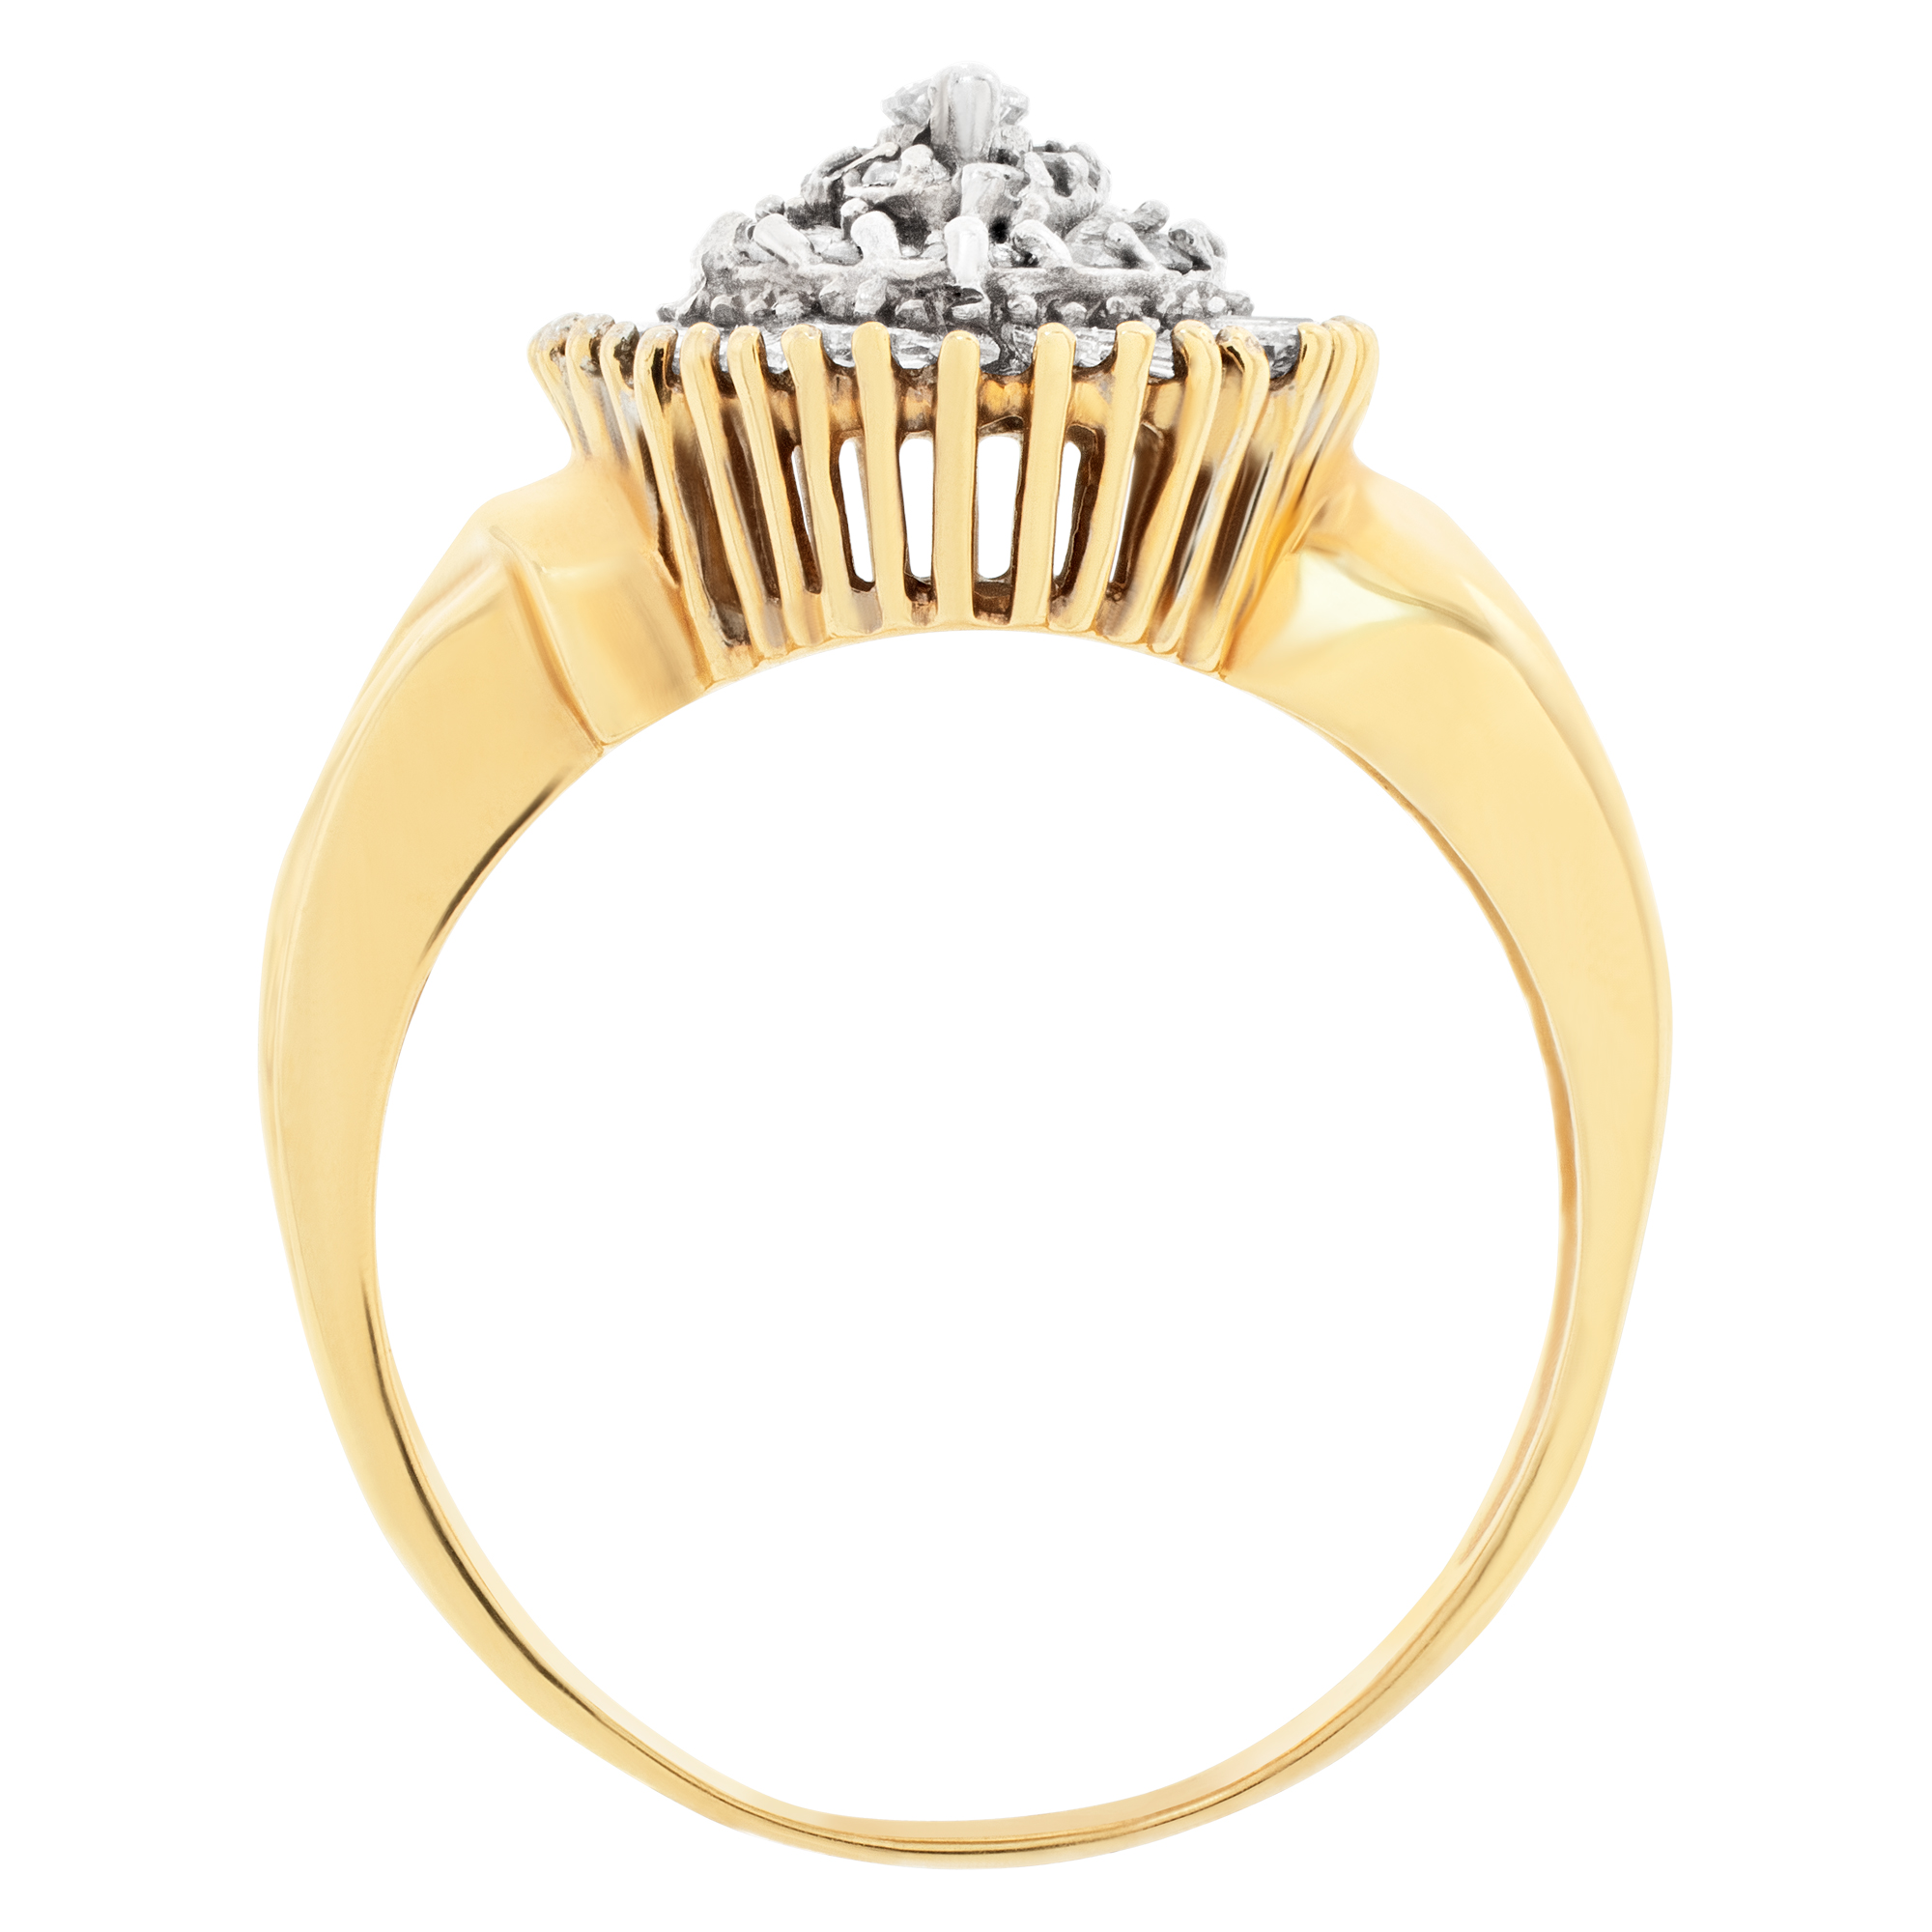 Ballerina diamond ring in 14k gold. 1.42 carats in diamonds. Size 9 image 4